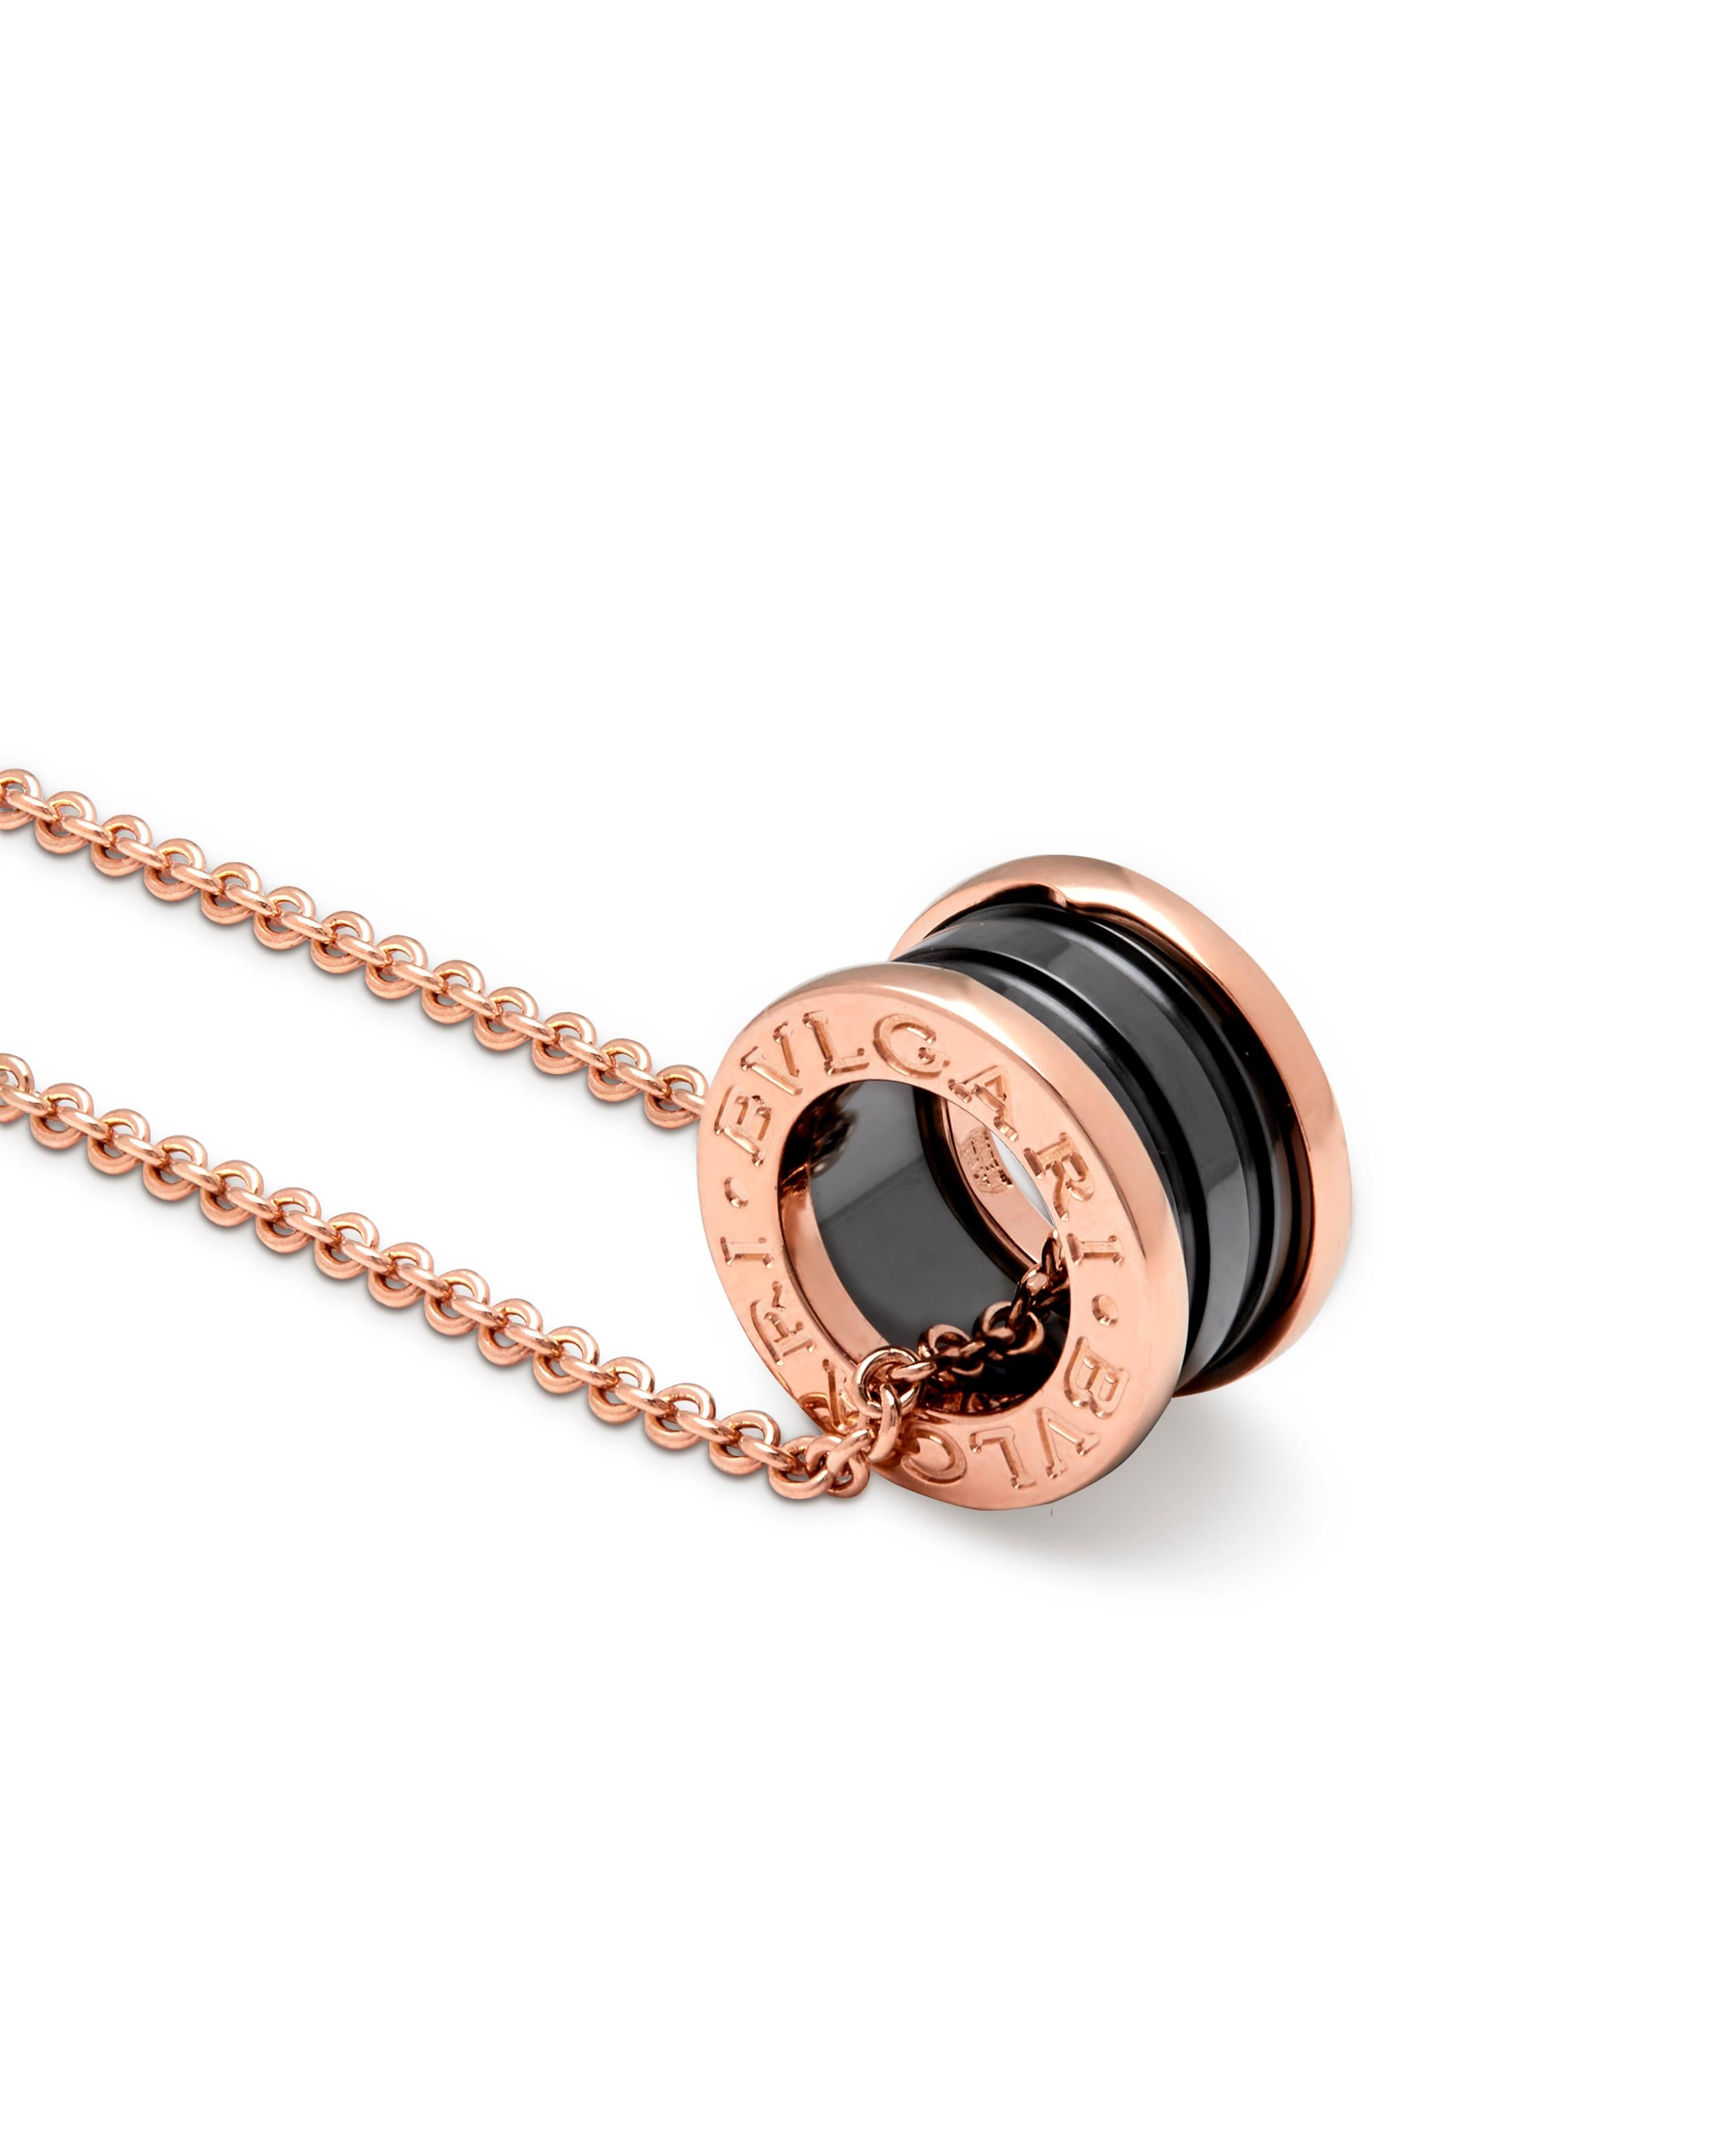 Bulgari B-Zero pendentif en or rose et céramique noire numéro de modèle 358050

Ce magnifique pendentif classique peut être porté à 18 pouces, avec un anneau à 17,16,15 pouces afin que vous ayez l'option de le porter à différentes longueurs. 

Ce